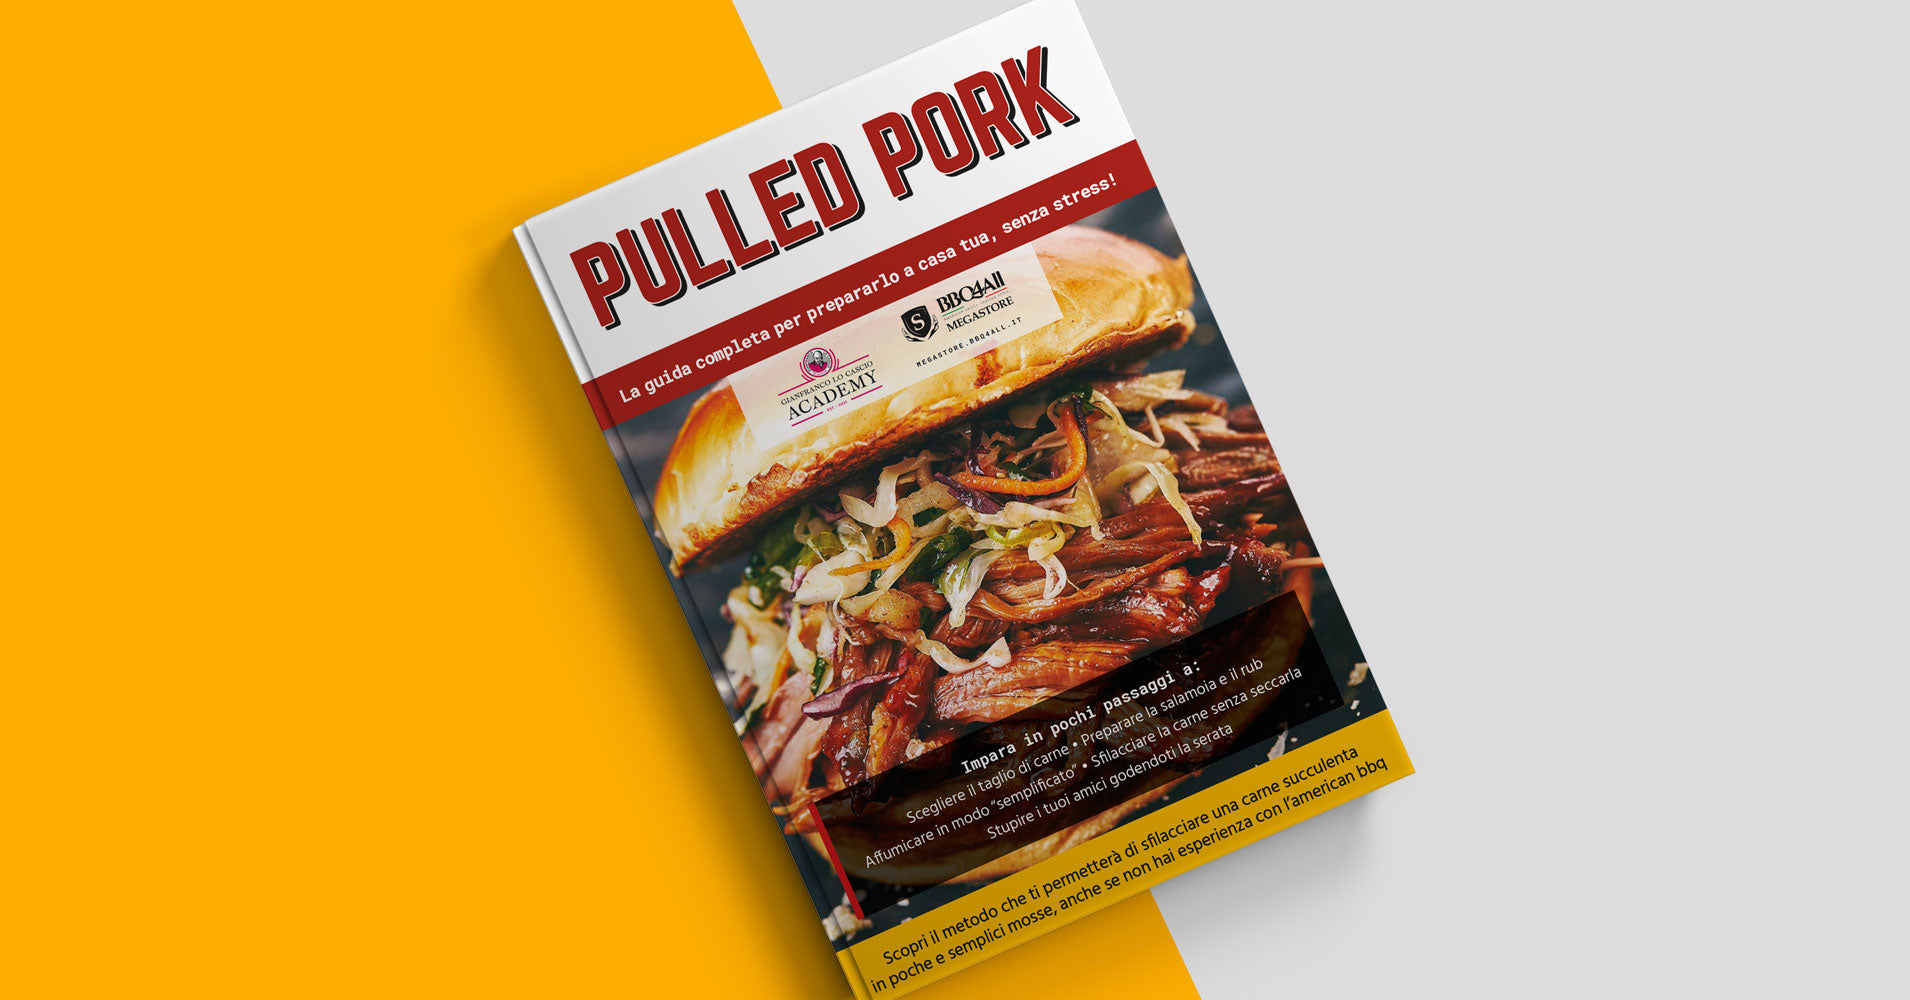 Guida digitale BBQ4All - Come si fa il Pulled pork